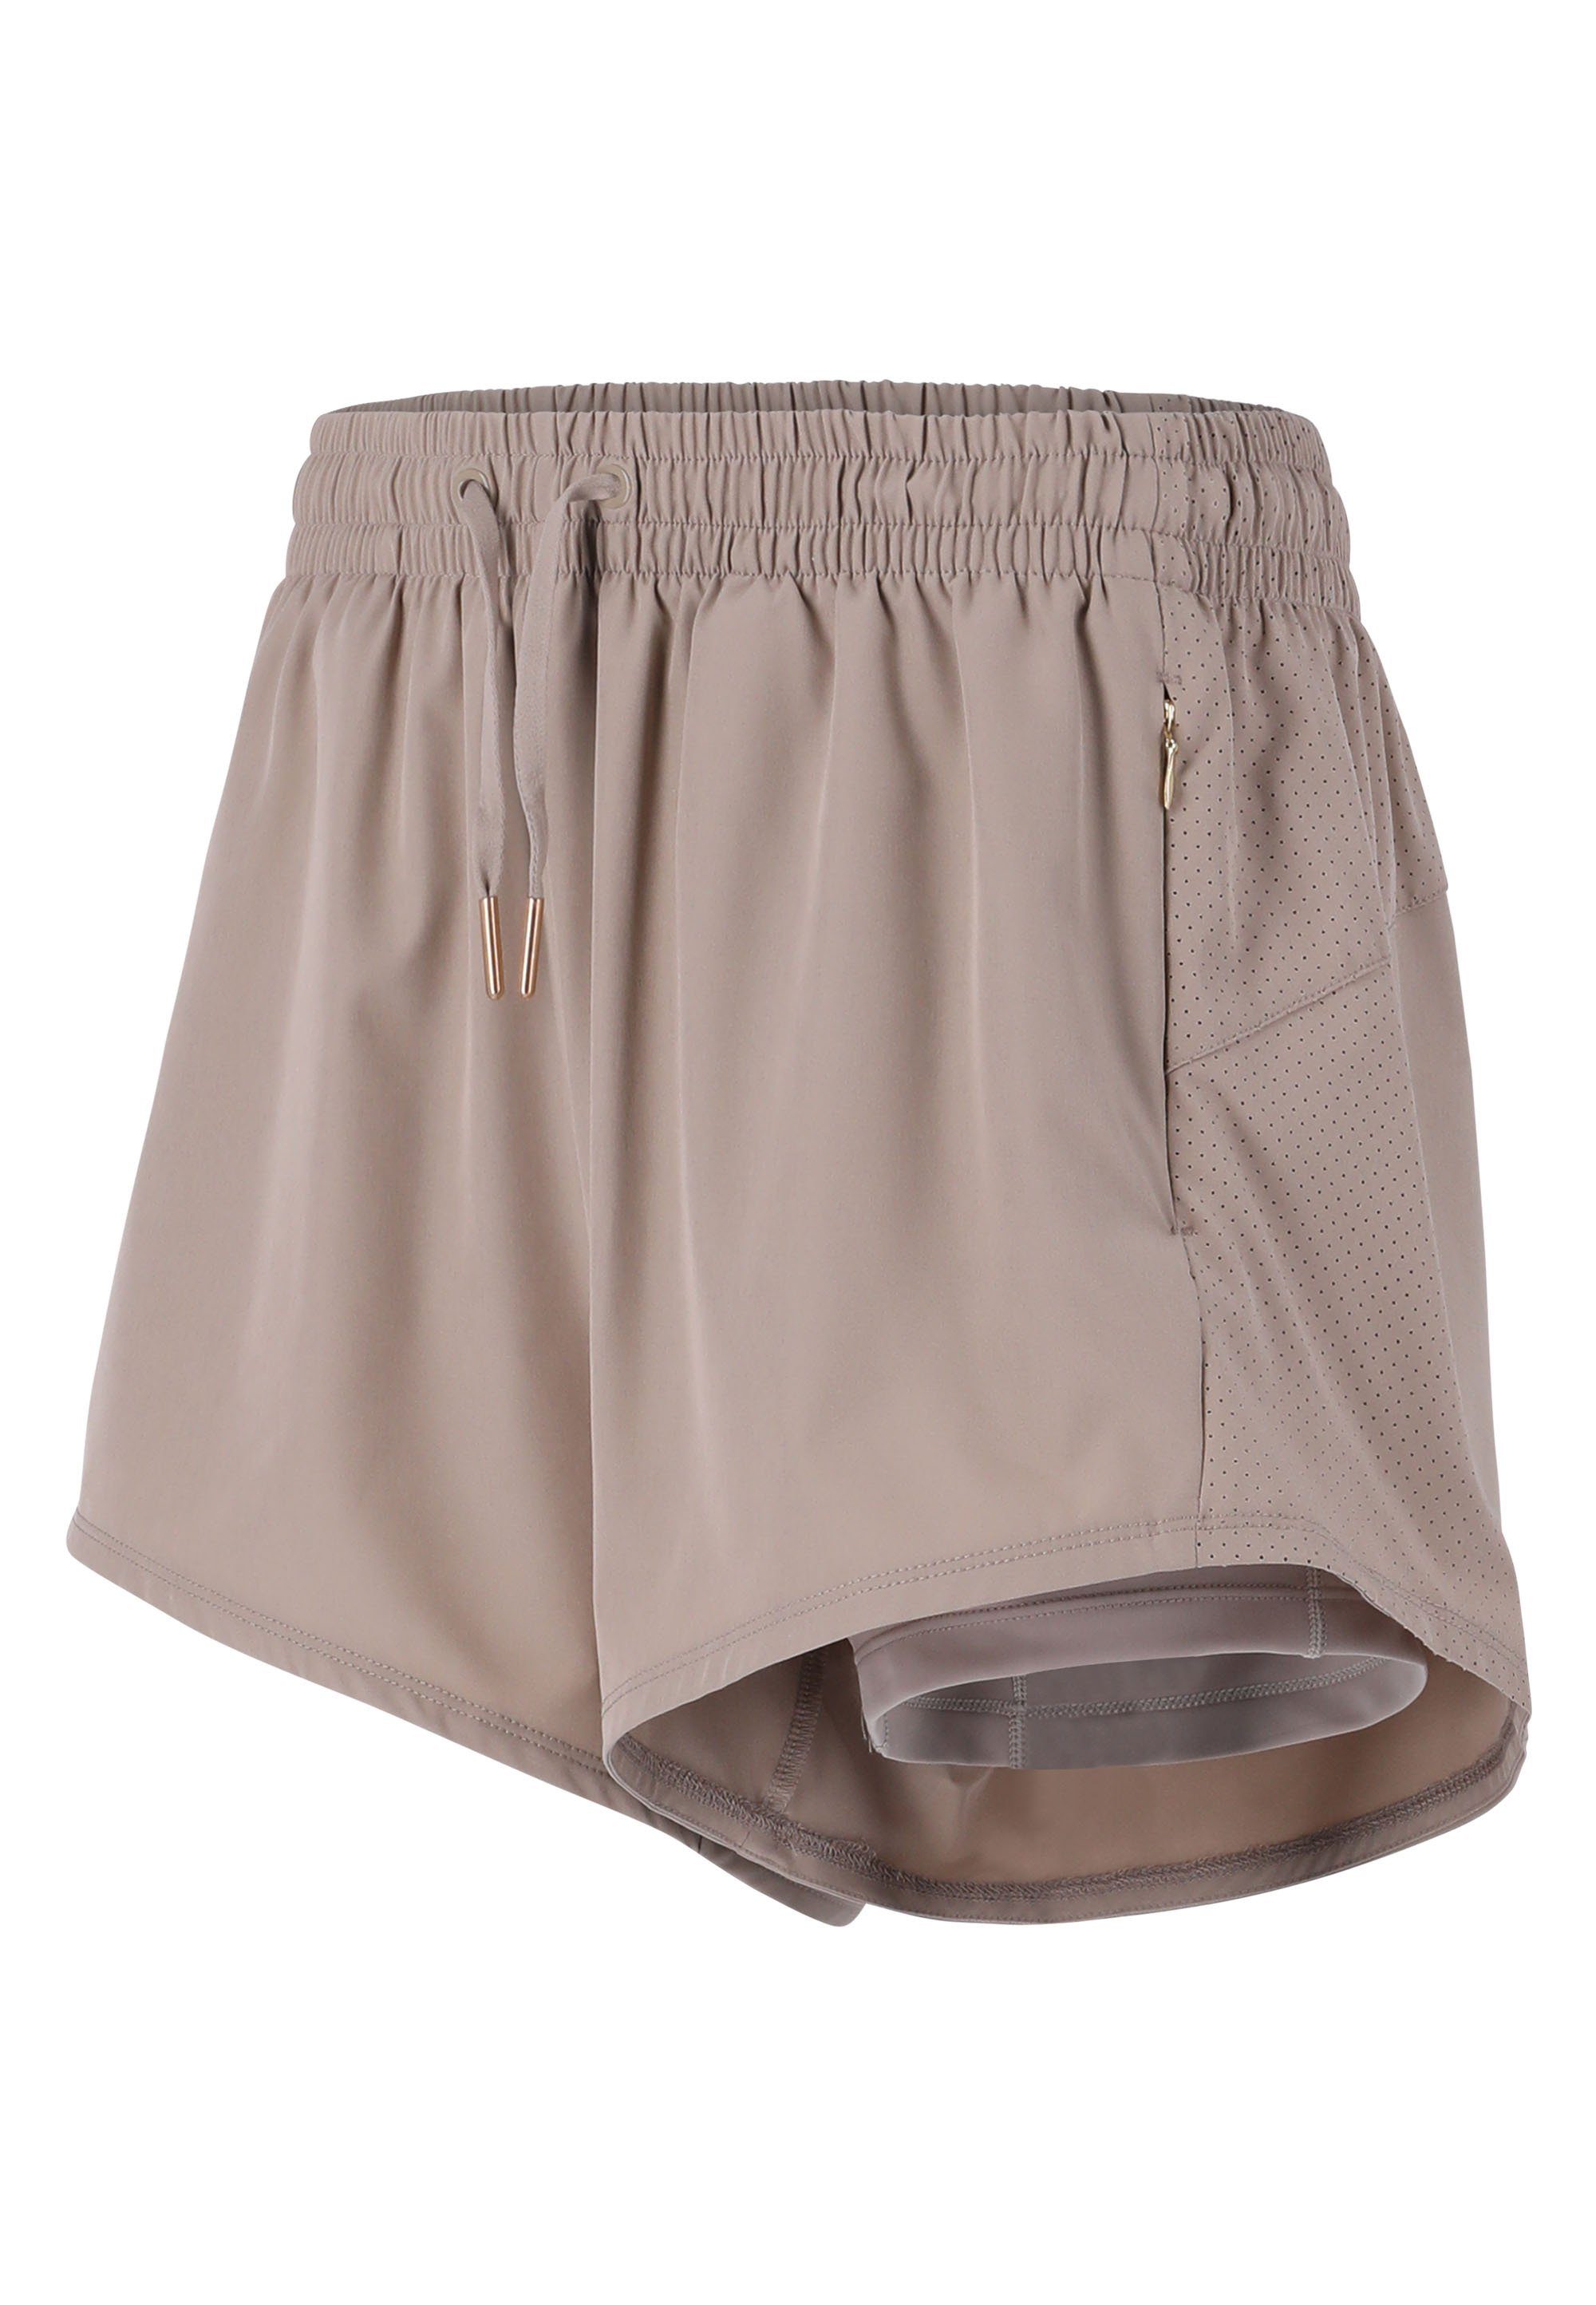 ENDURANCE praktischen mit Eslaire beige Taschen Shorts